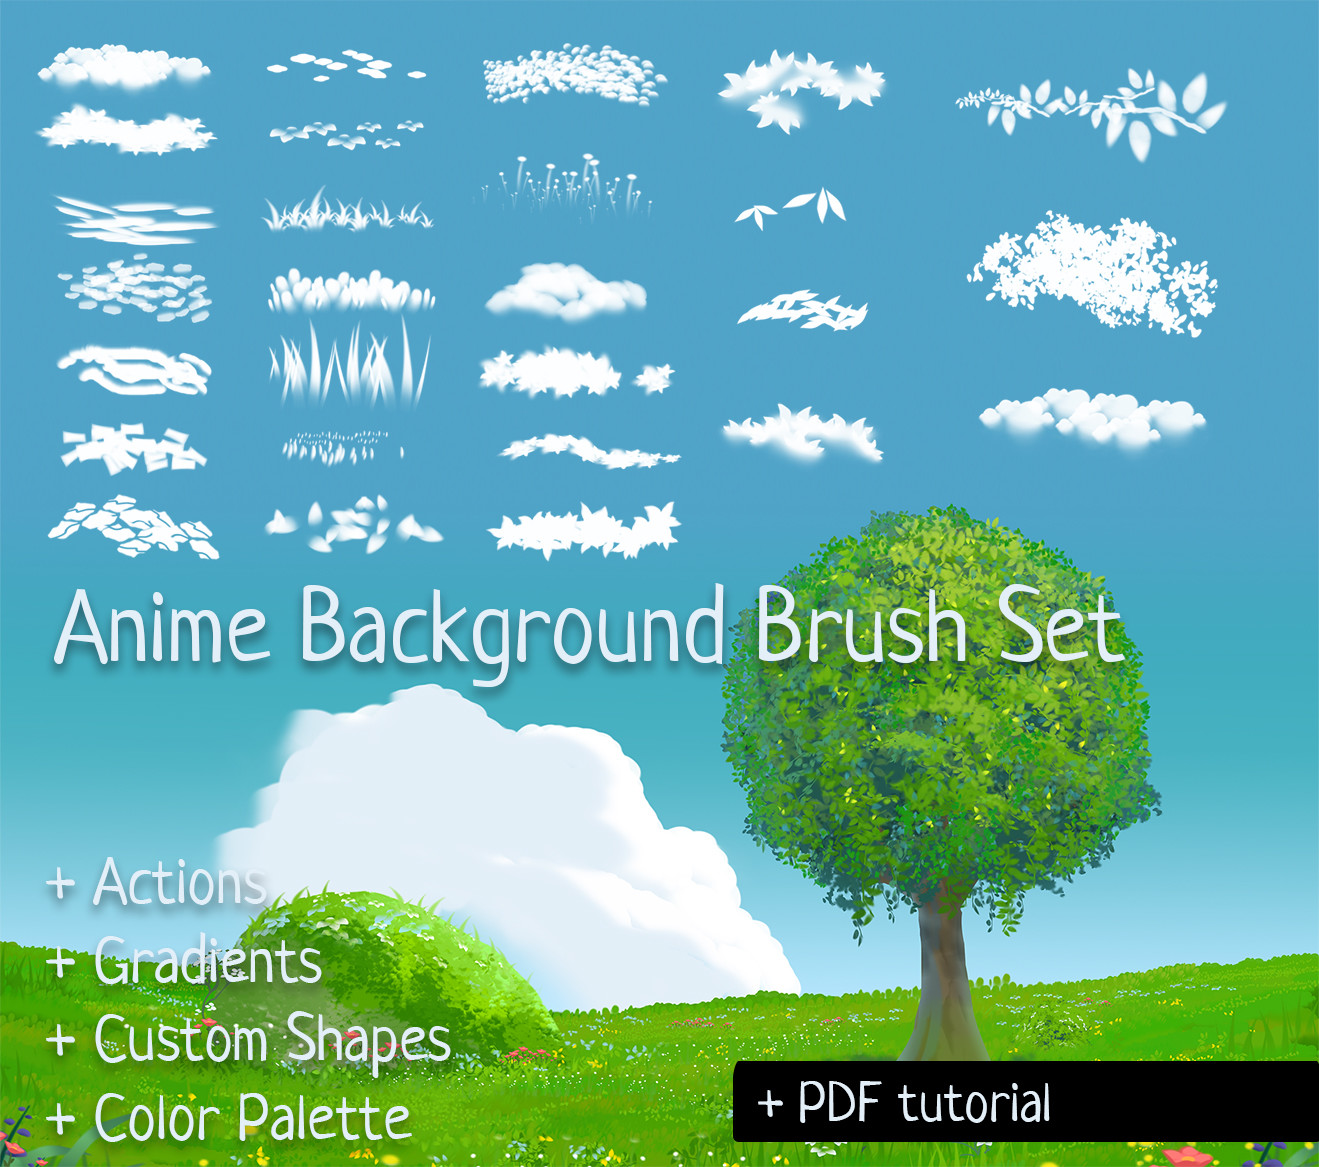 Chibi Anime Character Brushes | Free Photoshop Brushes at Brusheezy!